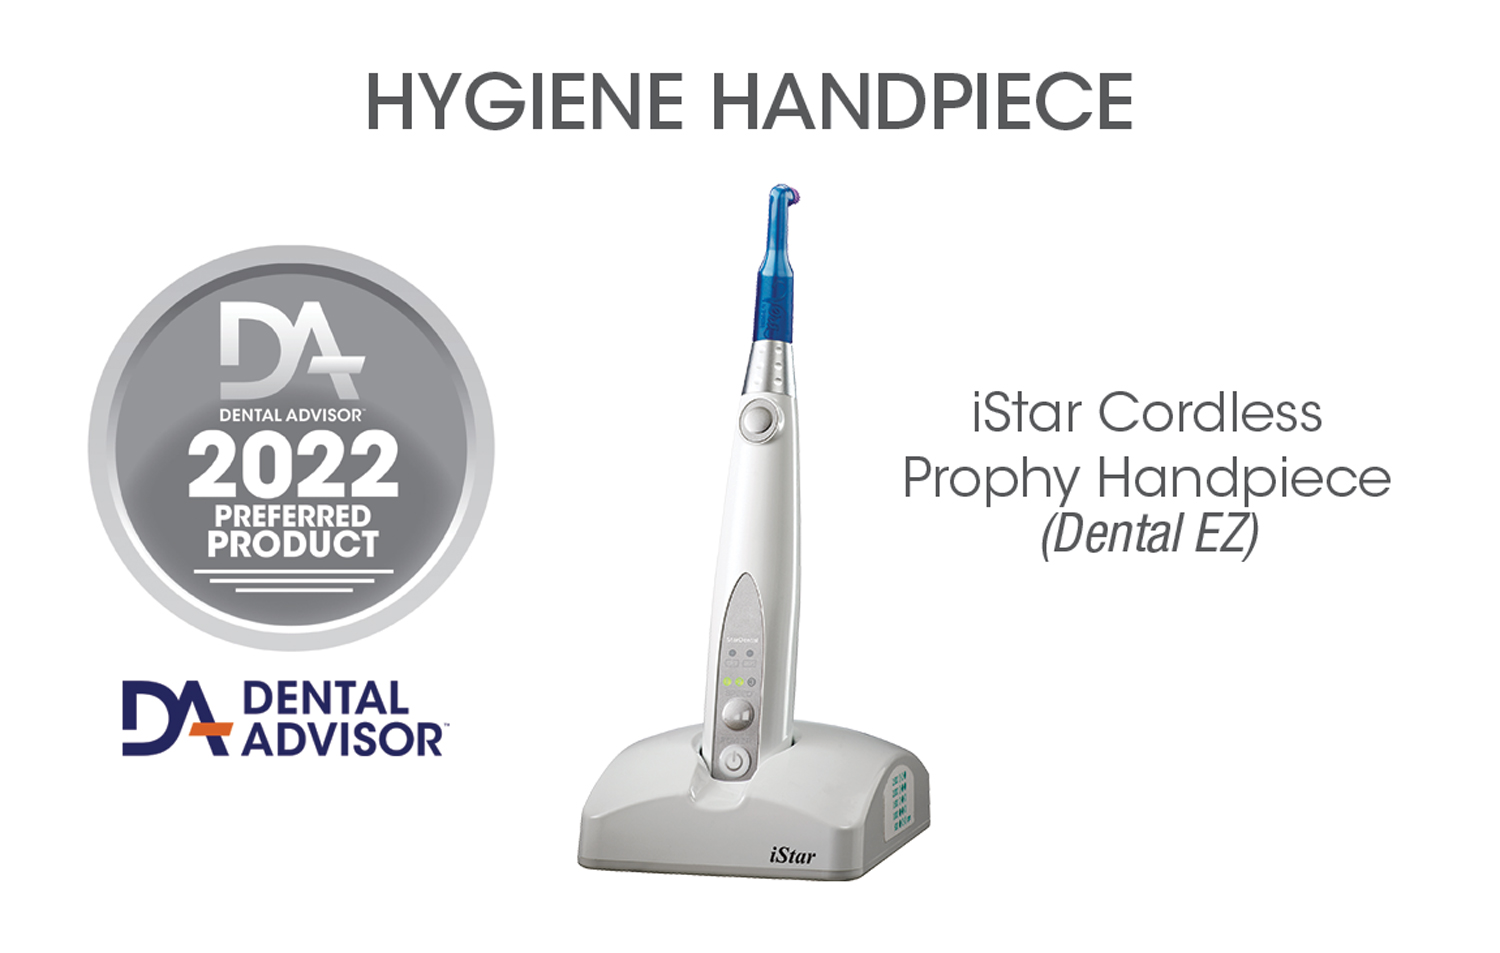 iStar Cordless Hygiene Handpiece